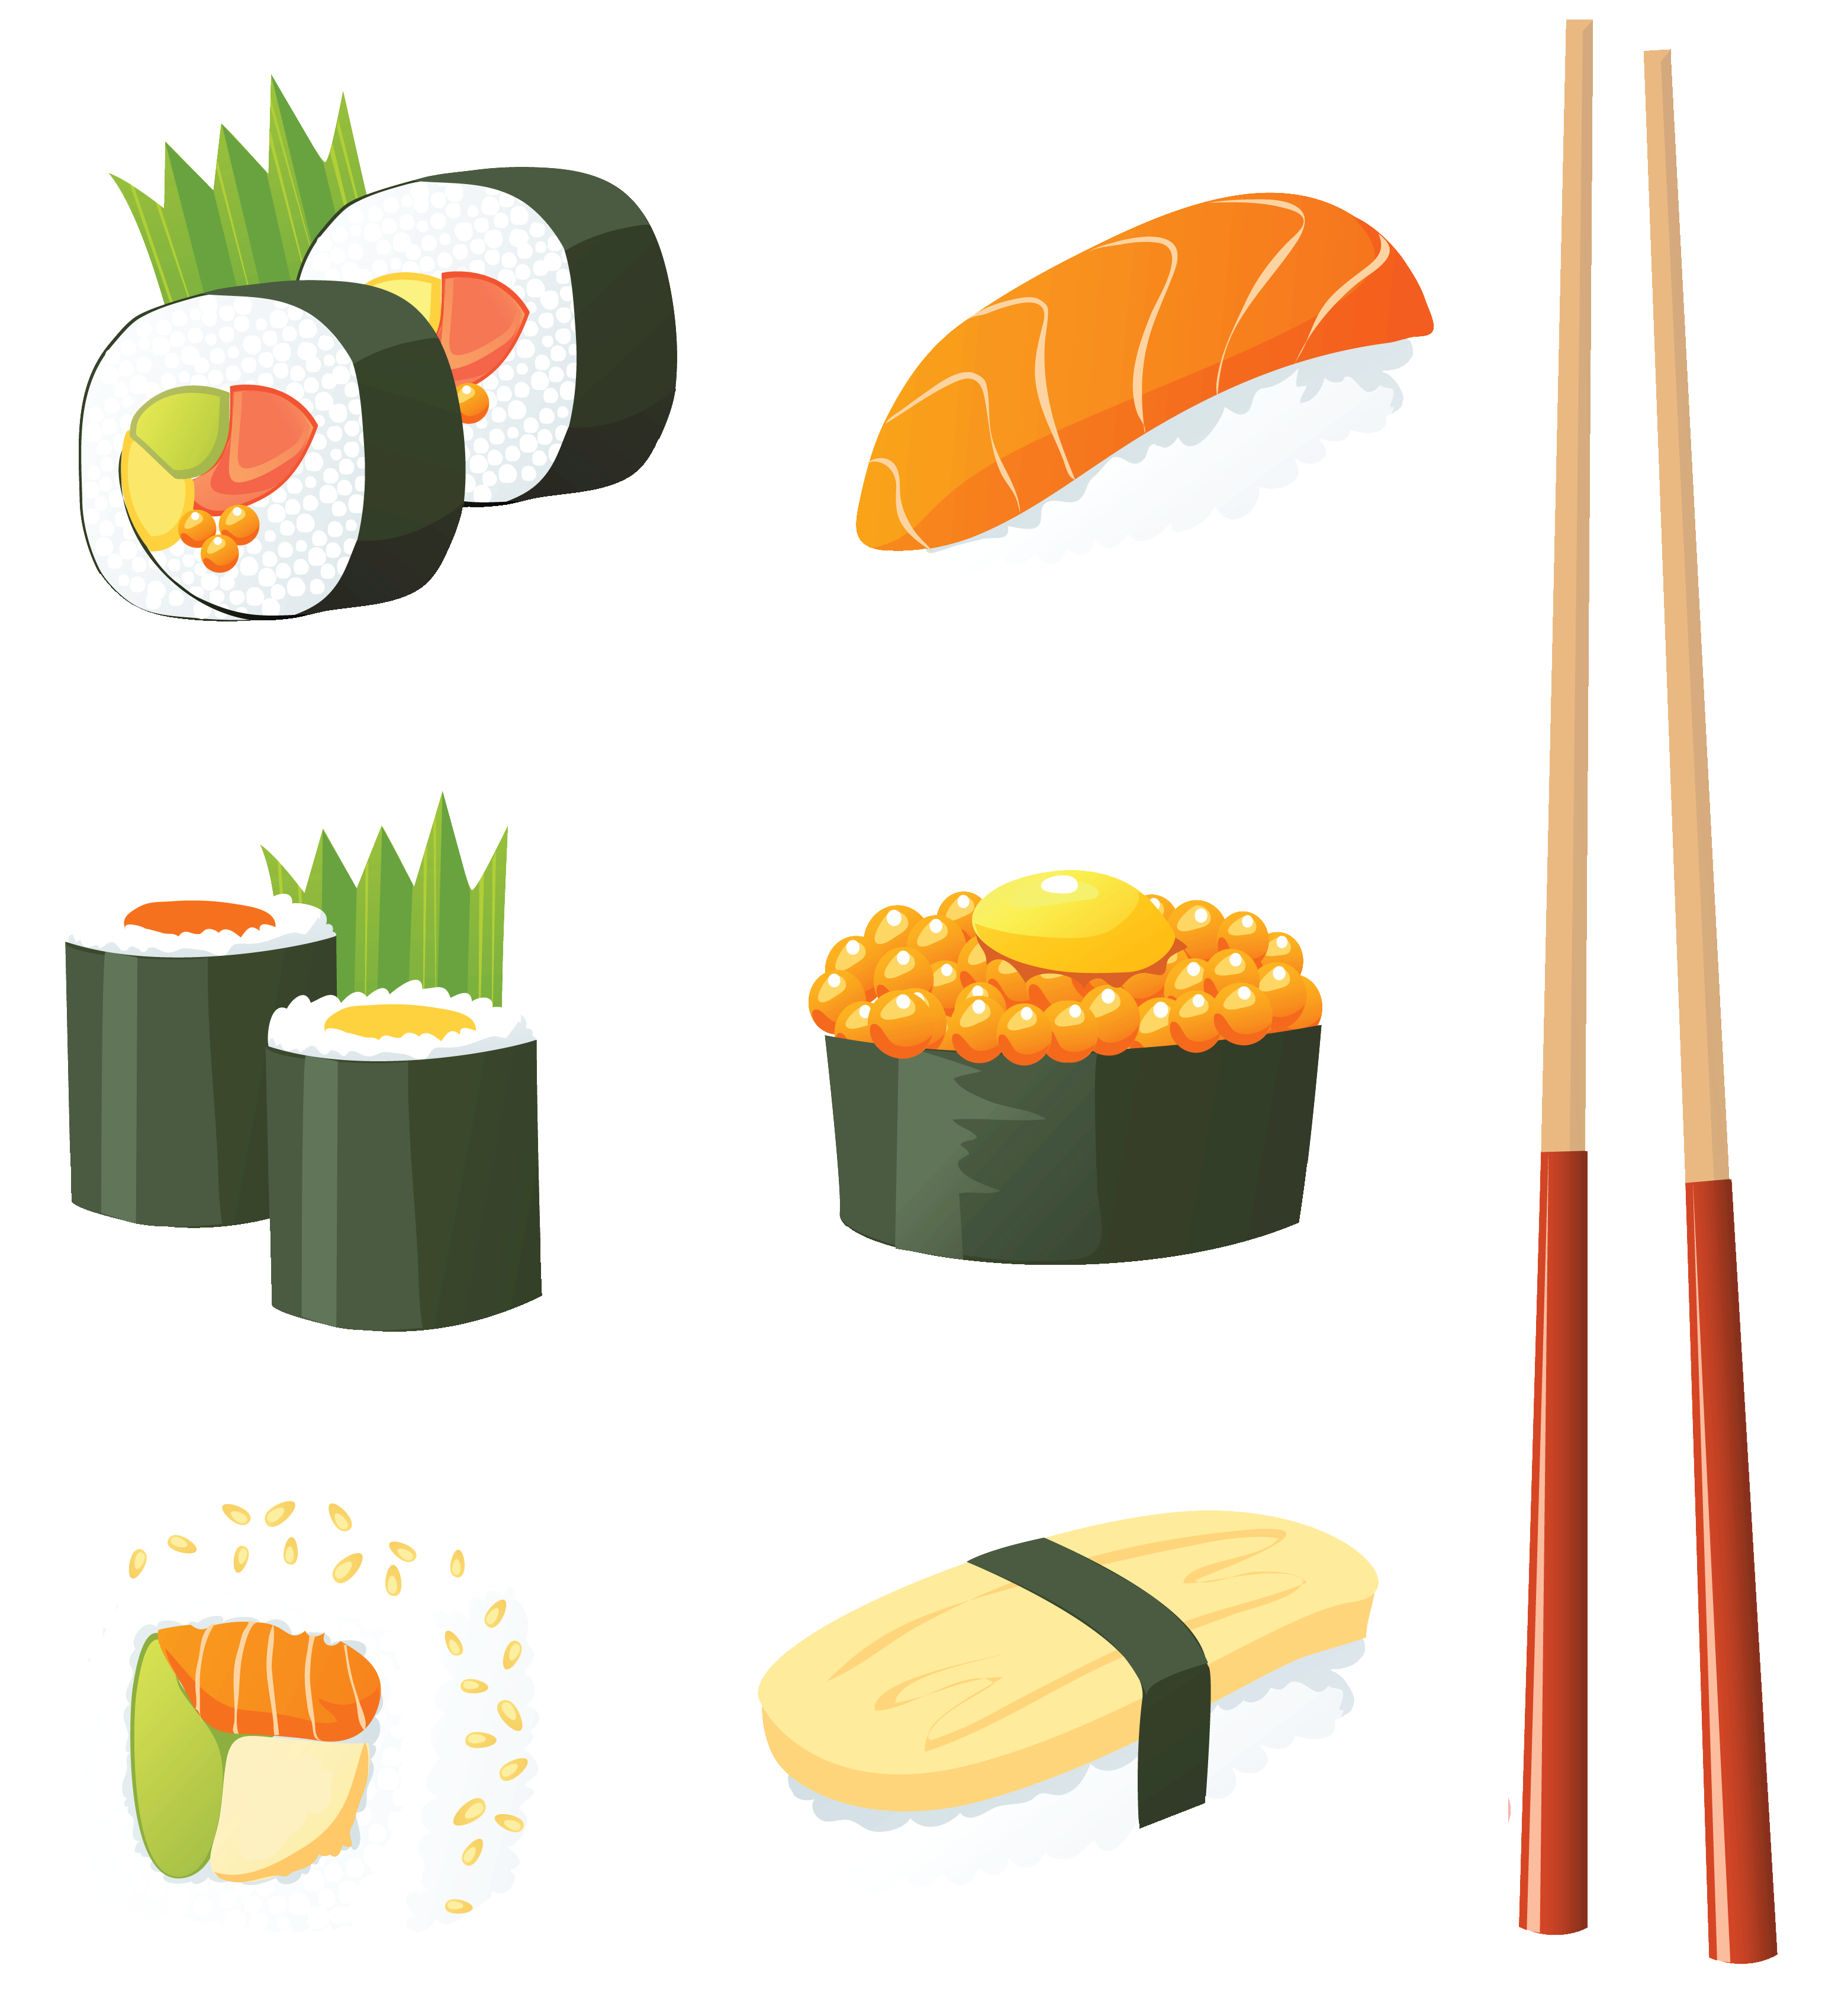 Japonês, Comida, Sushi, Jogo Royalty Free SVG, Cliparts, Vetores, e  Ilustrações Stock. Image 33190571